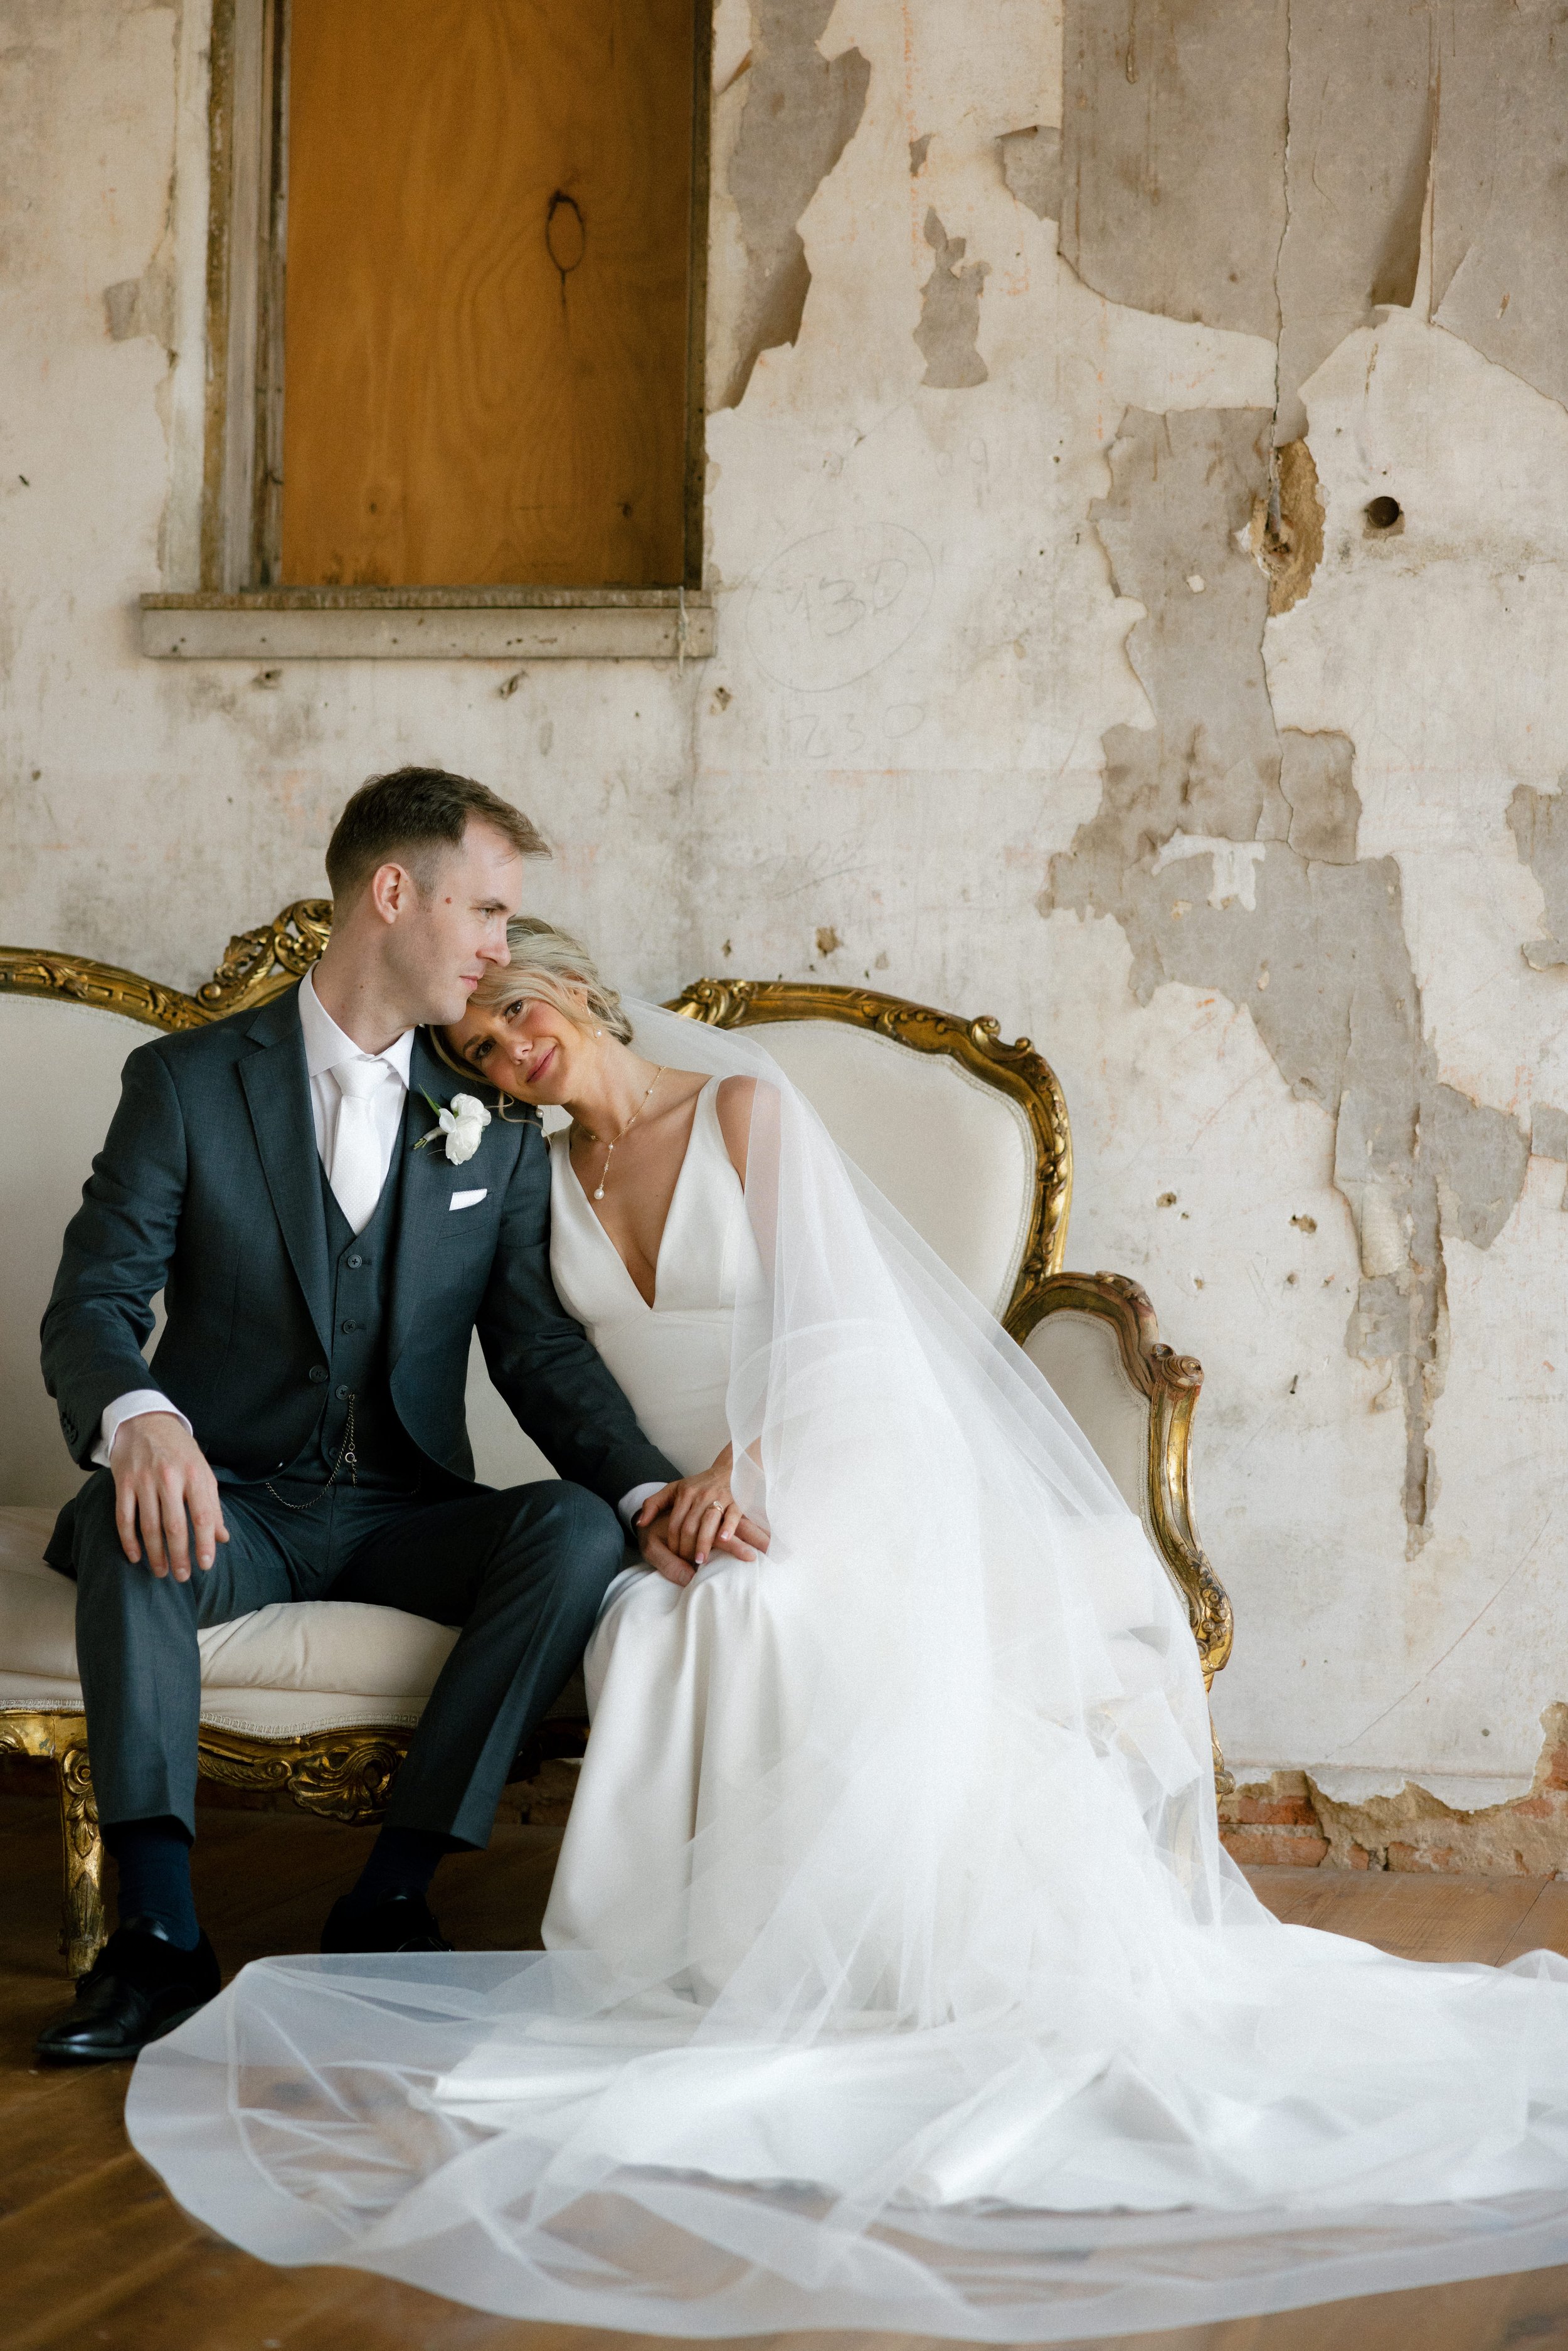 Bride resting head on groom's shoulder on loveseat in rustic room